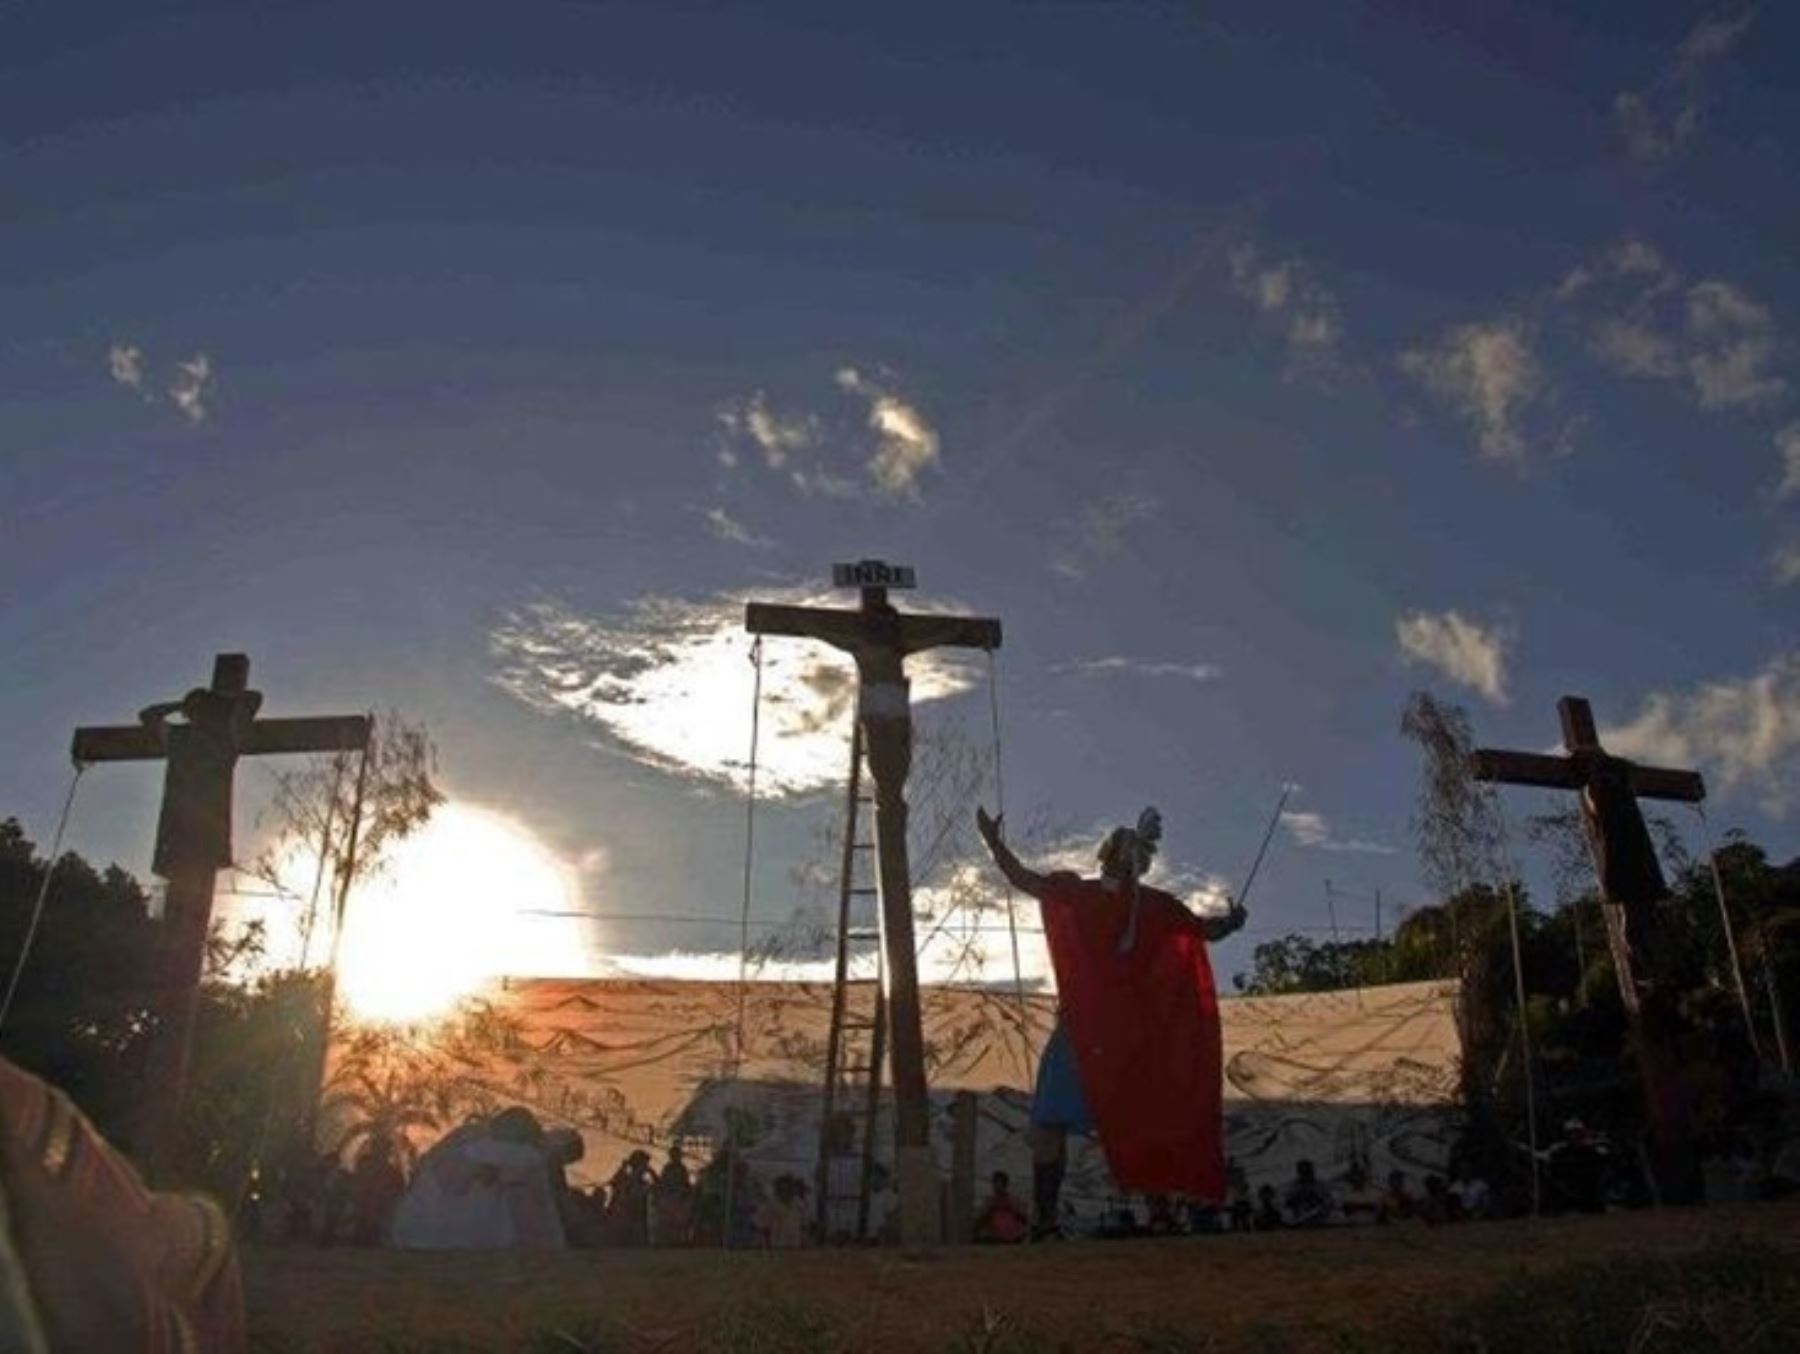 La provincia de Lamas, en San Martín, espera recibir más de 15,000 turistas para apreciar escenificación religiosa por Semana Santa, una de las celebraciones más tradicionales de esta región. ANDINA/Difusión